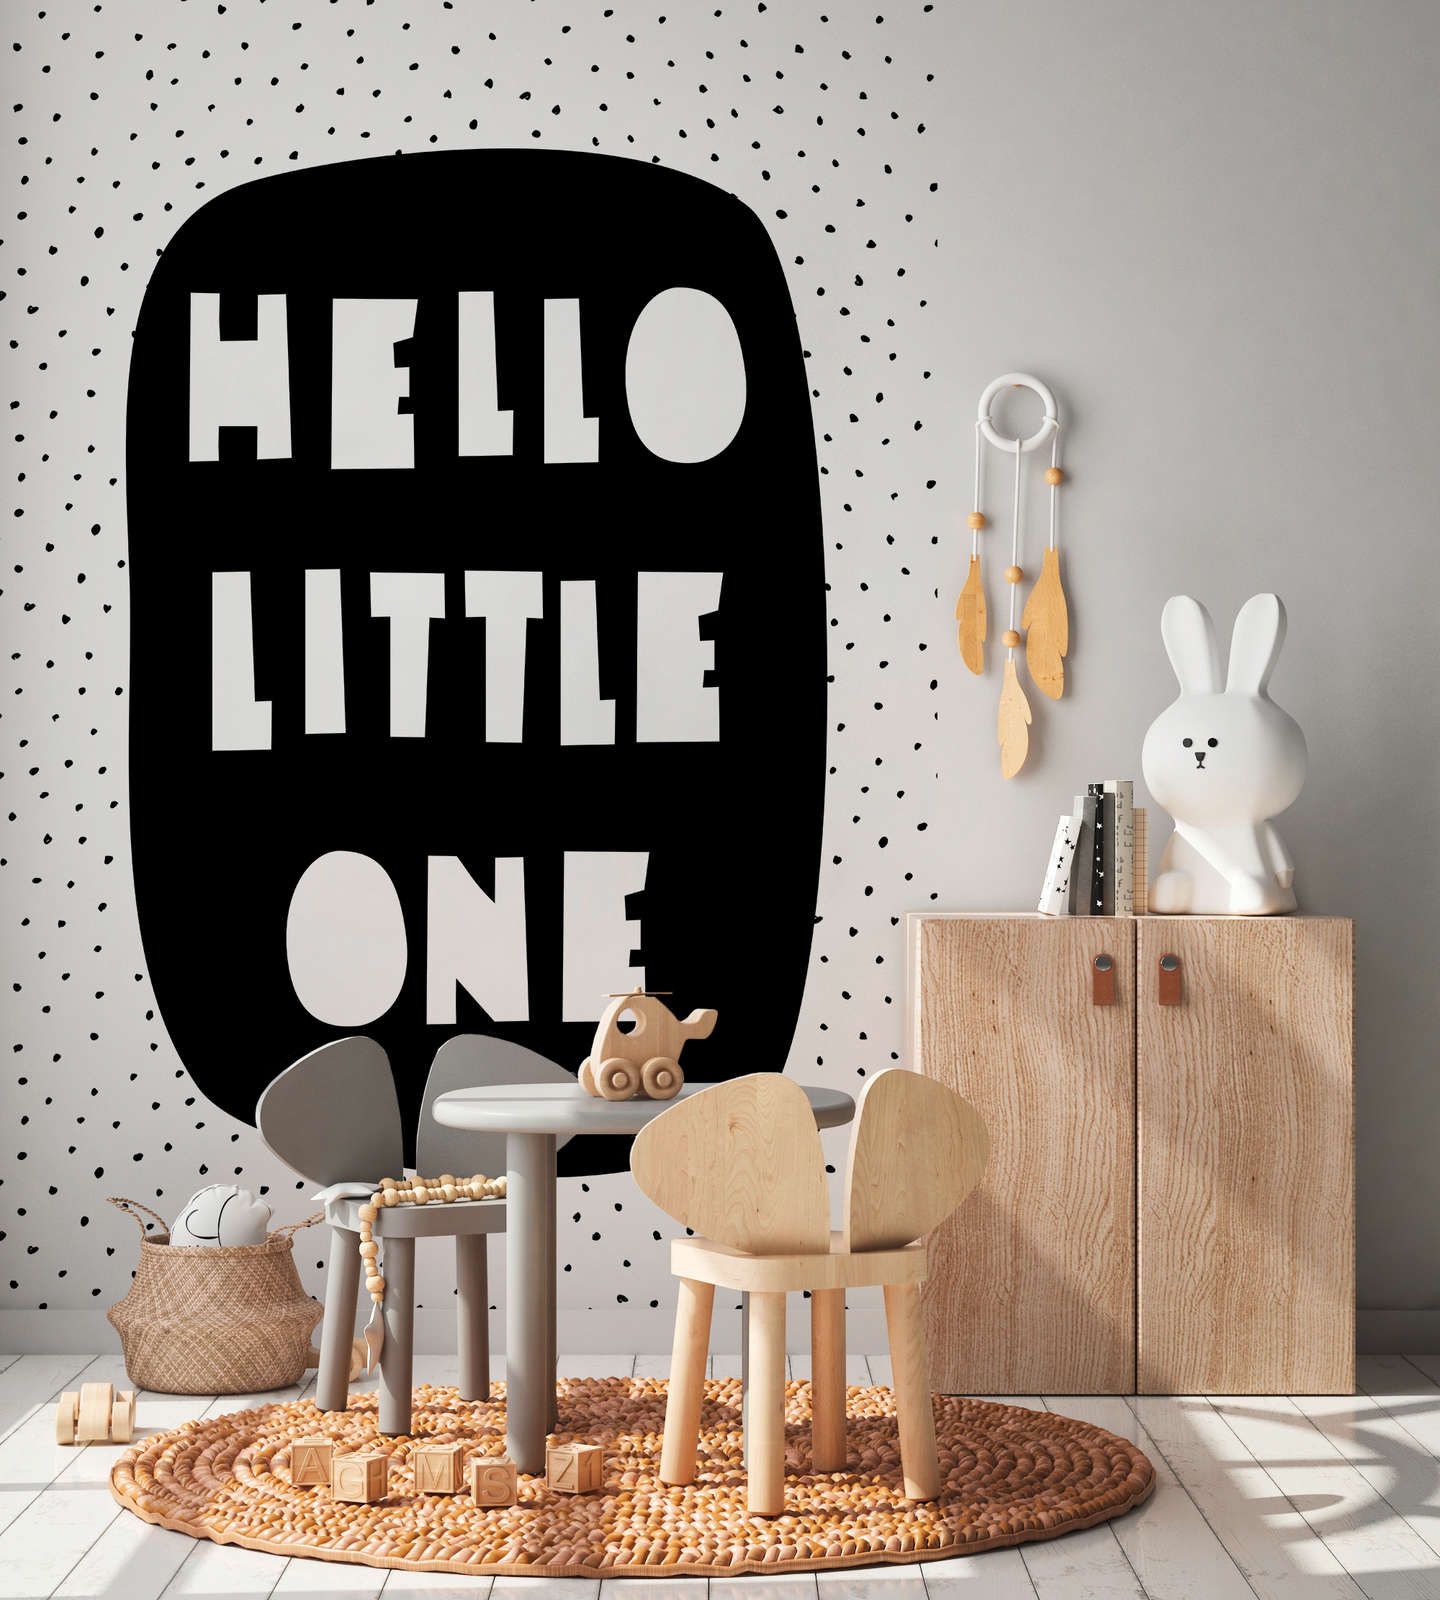             Digital behang voor de kinderkamer met "Hello Little One" opschrift - Glad & parelmoer fleece
        